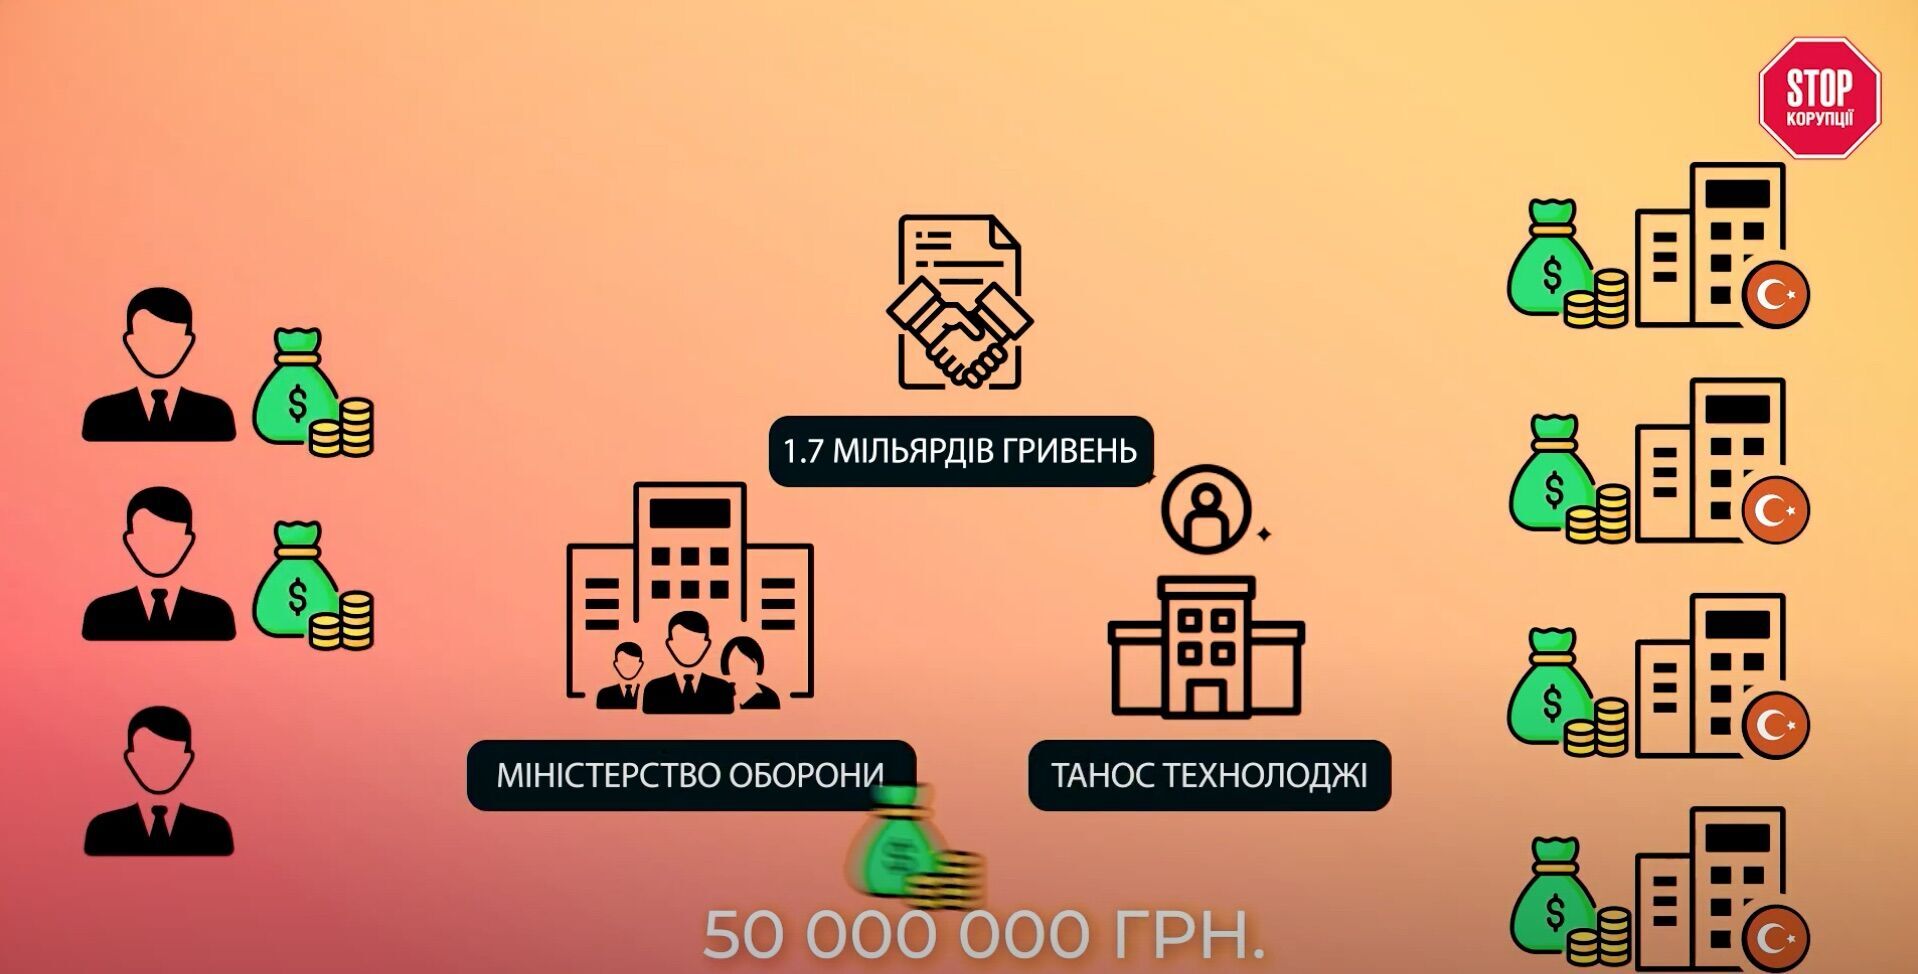 Схема вывода 1,7 млрд грн от Минобороны через ''Танос Технолоджи''